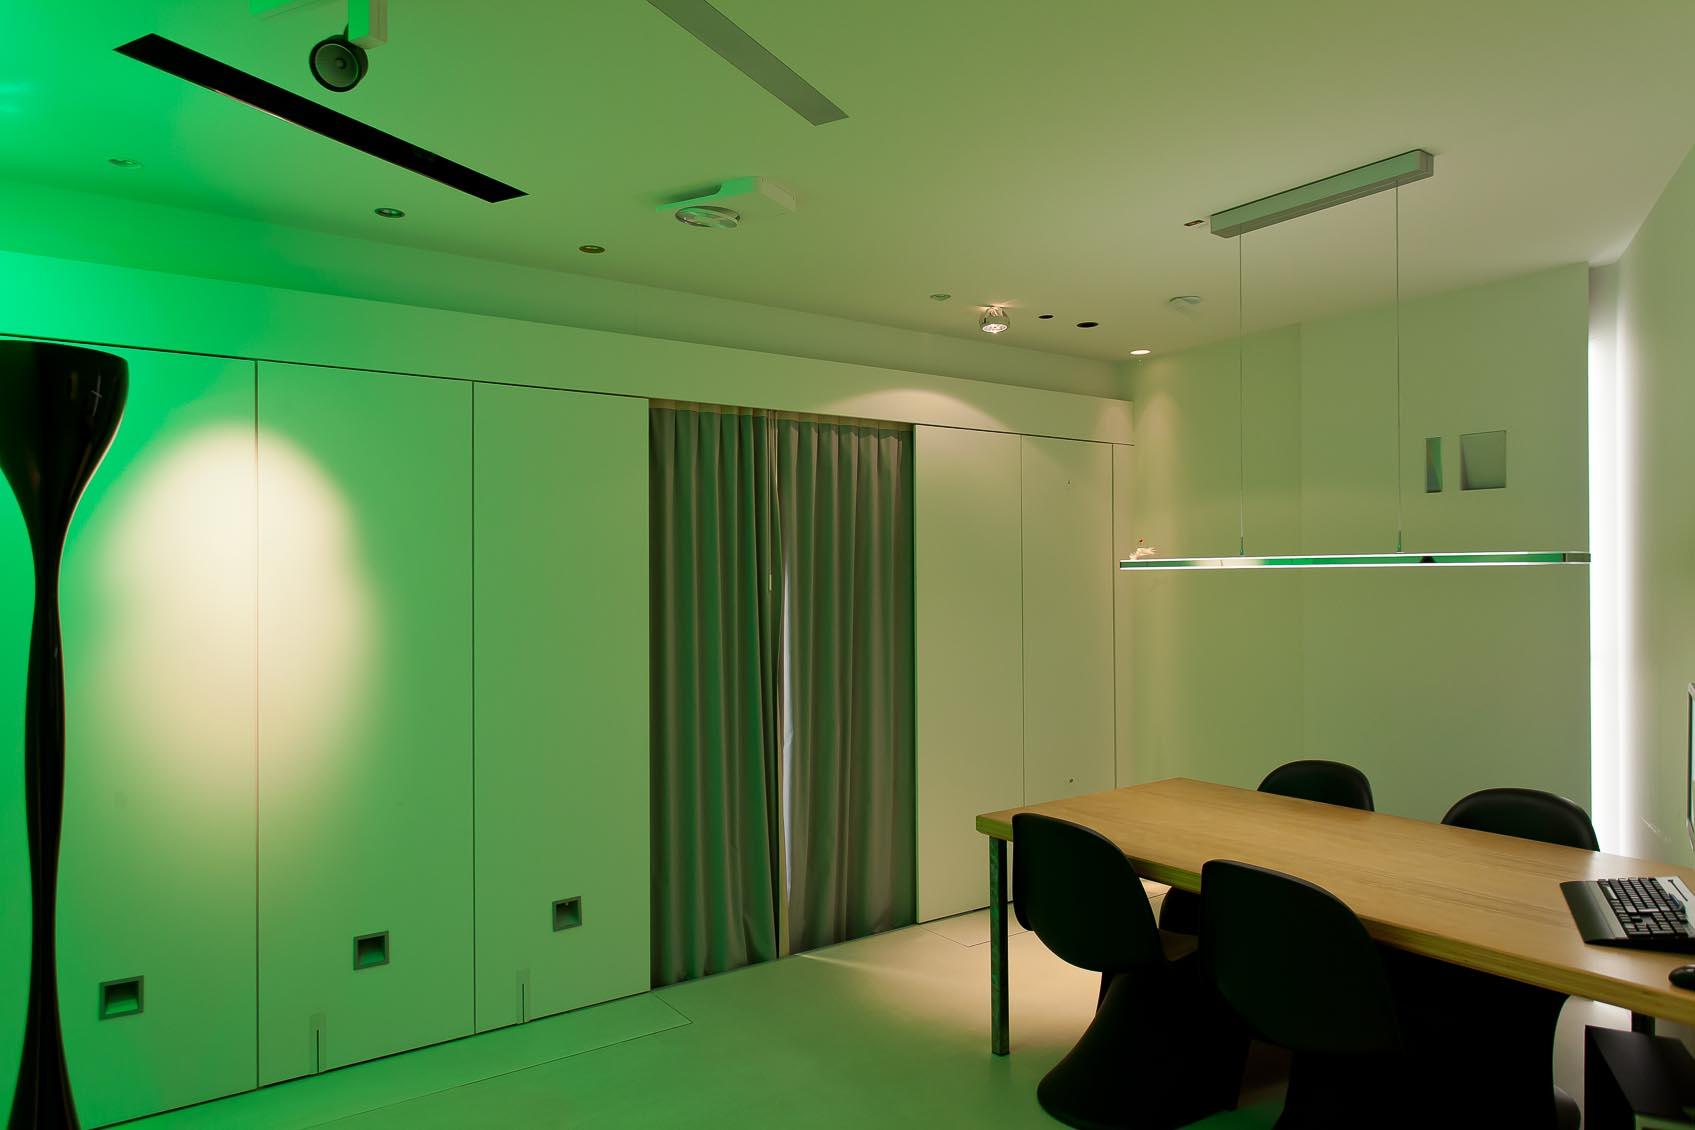 Beleef interieurverlichting in onze design lichtstudio13